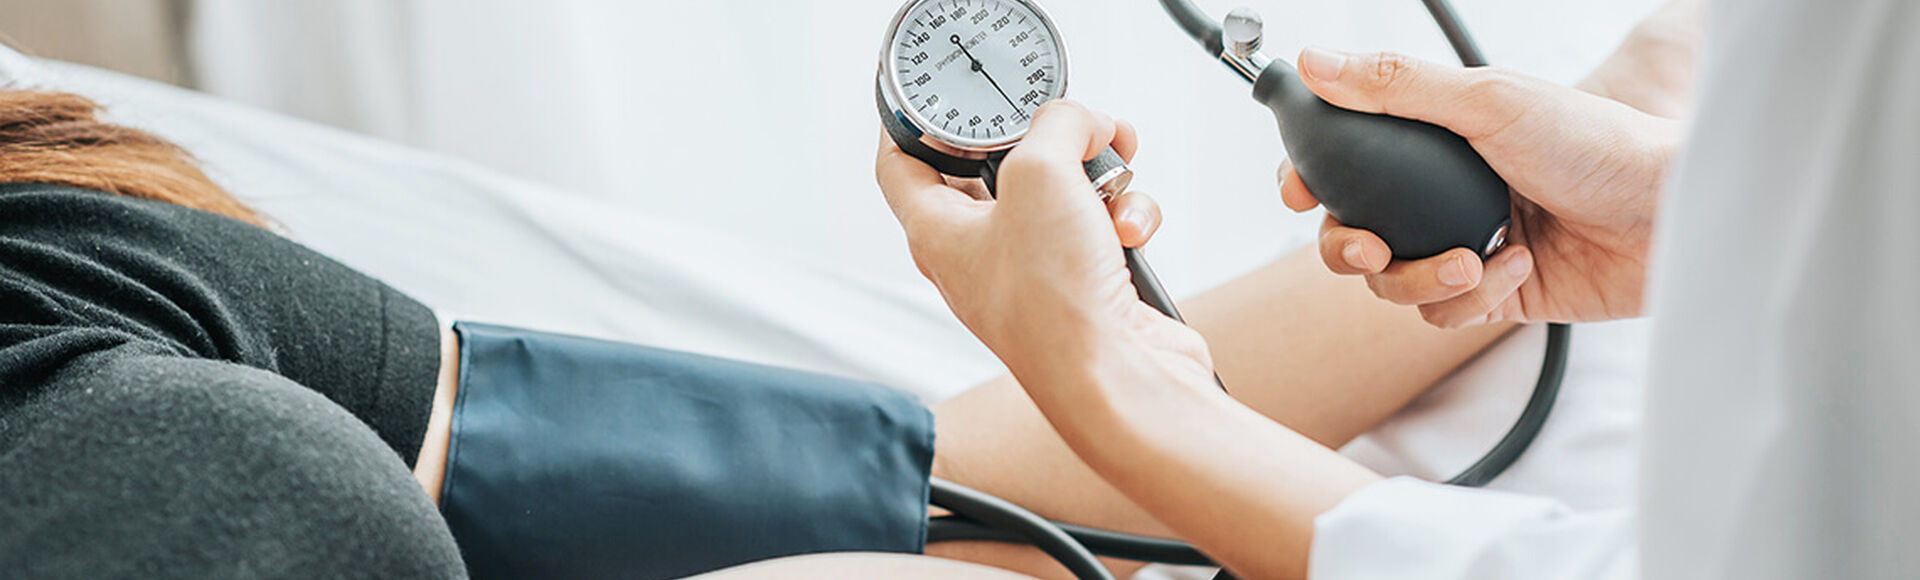 Presión arterial ideal durante tu embarazo  | by Huggies Argentina